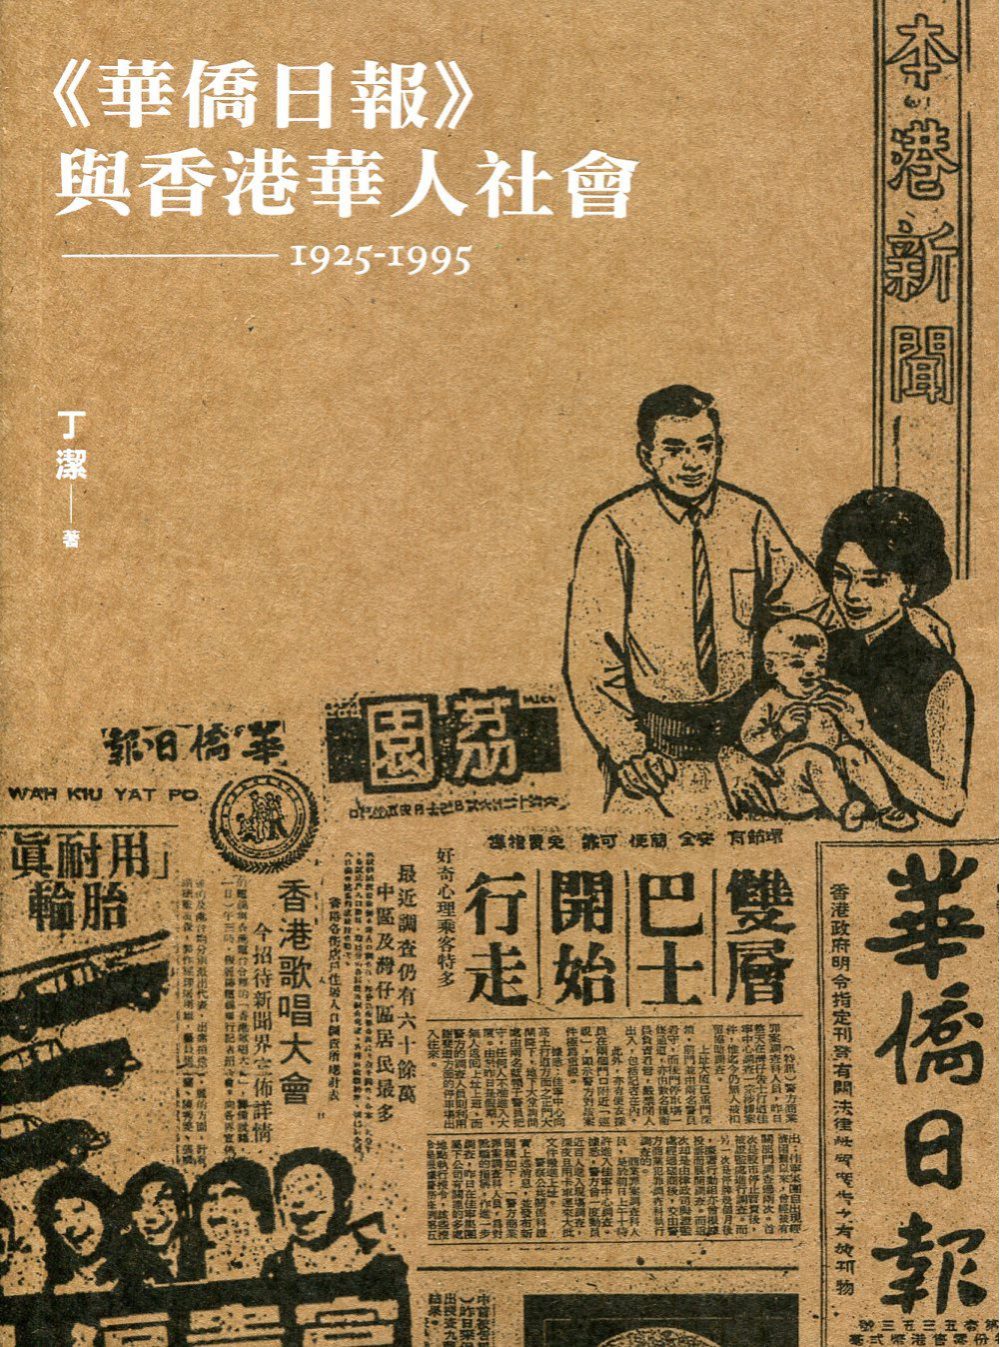 《華僑日報》與香港華人社會（1925-1995）